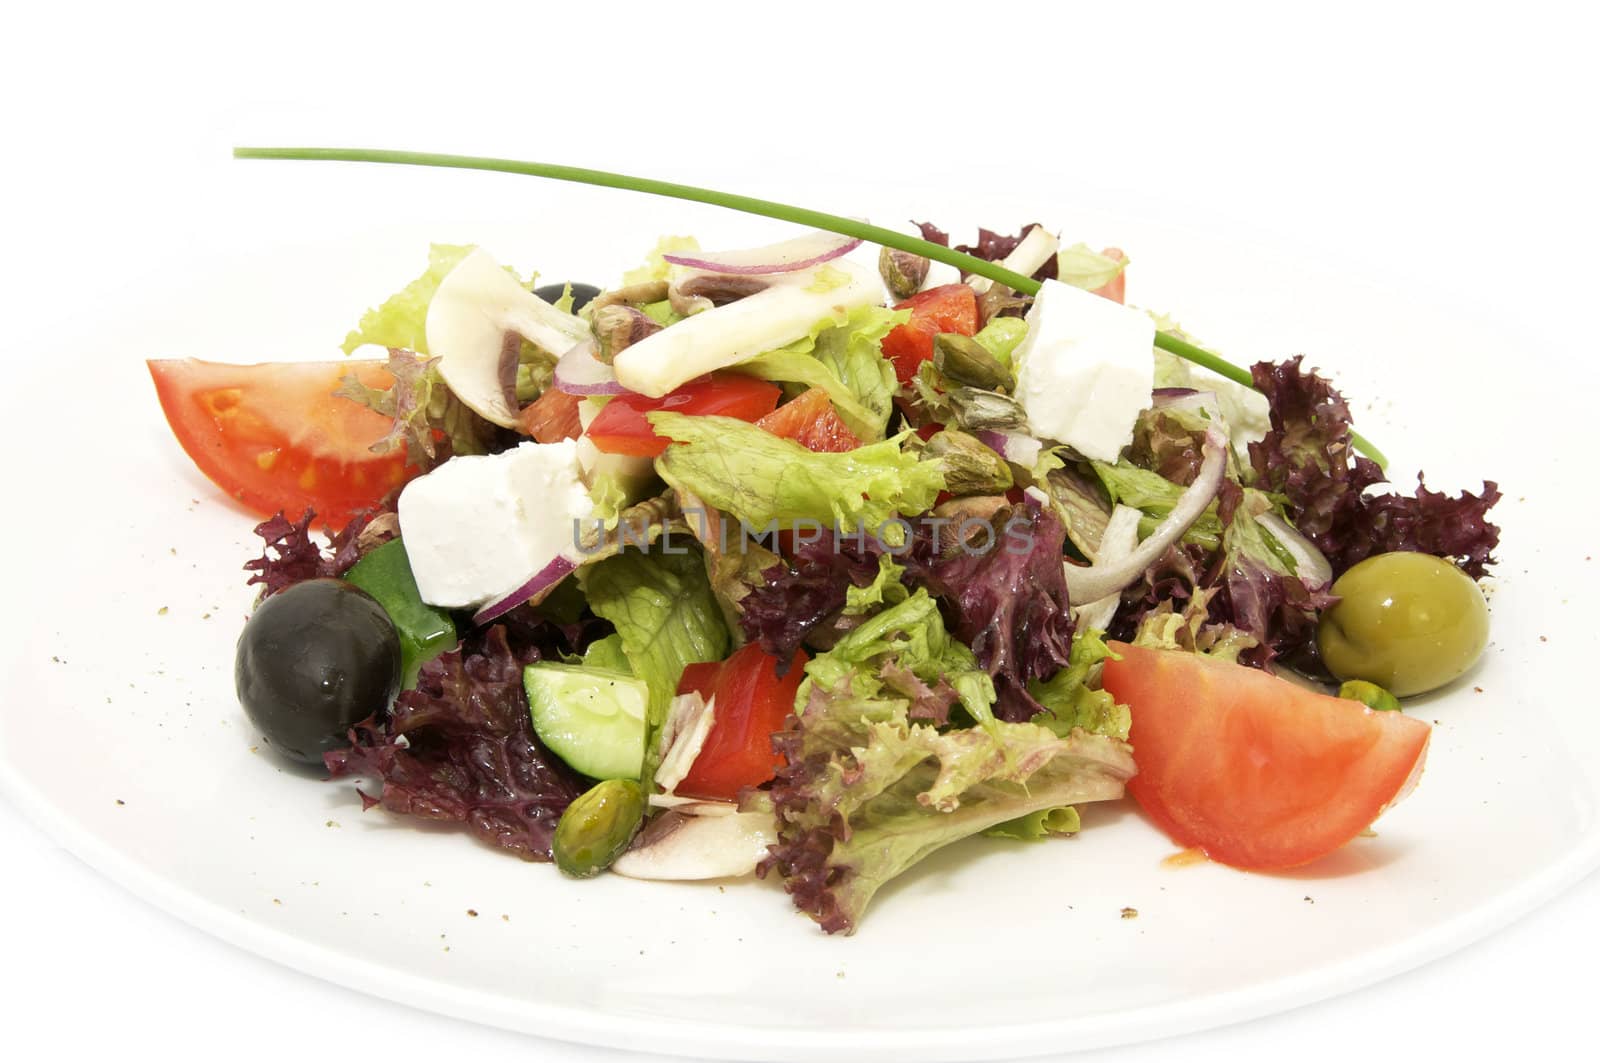 Greek salad by Lester120